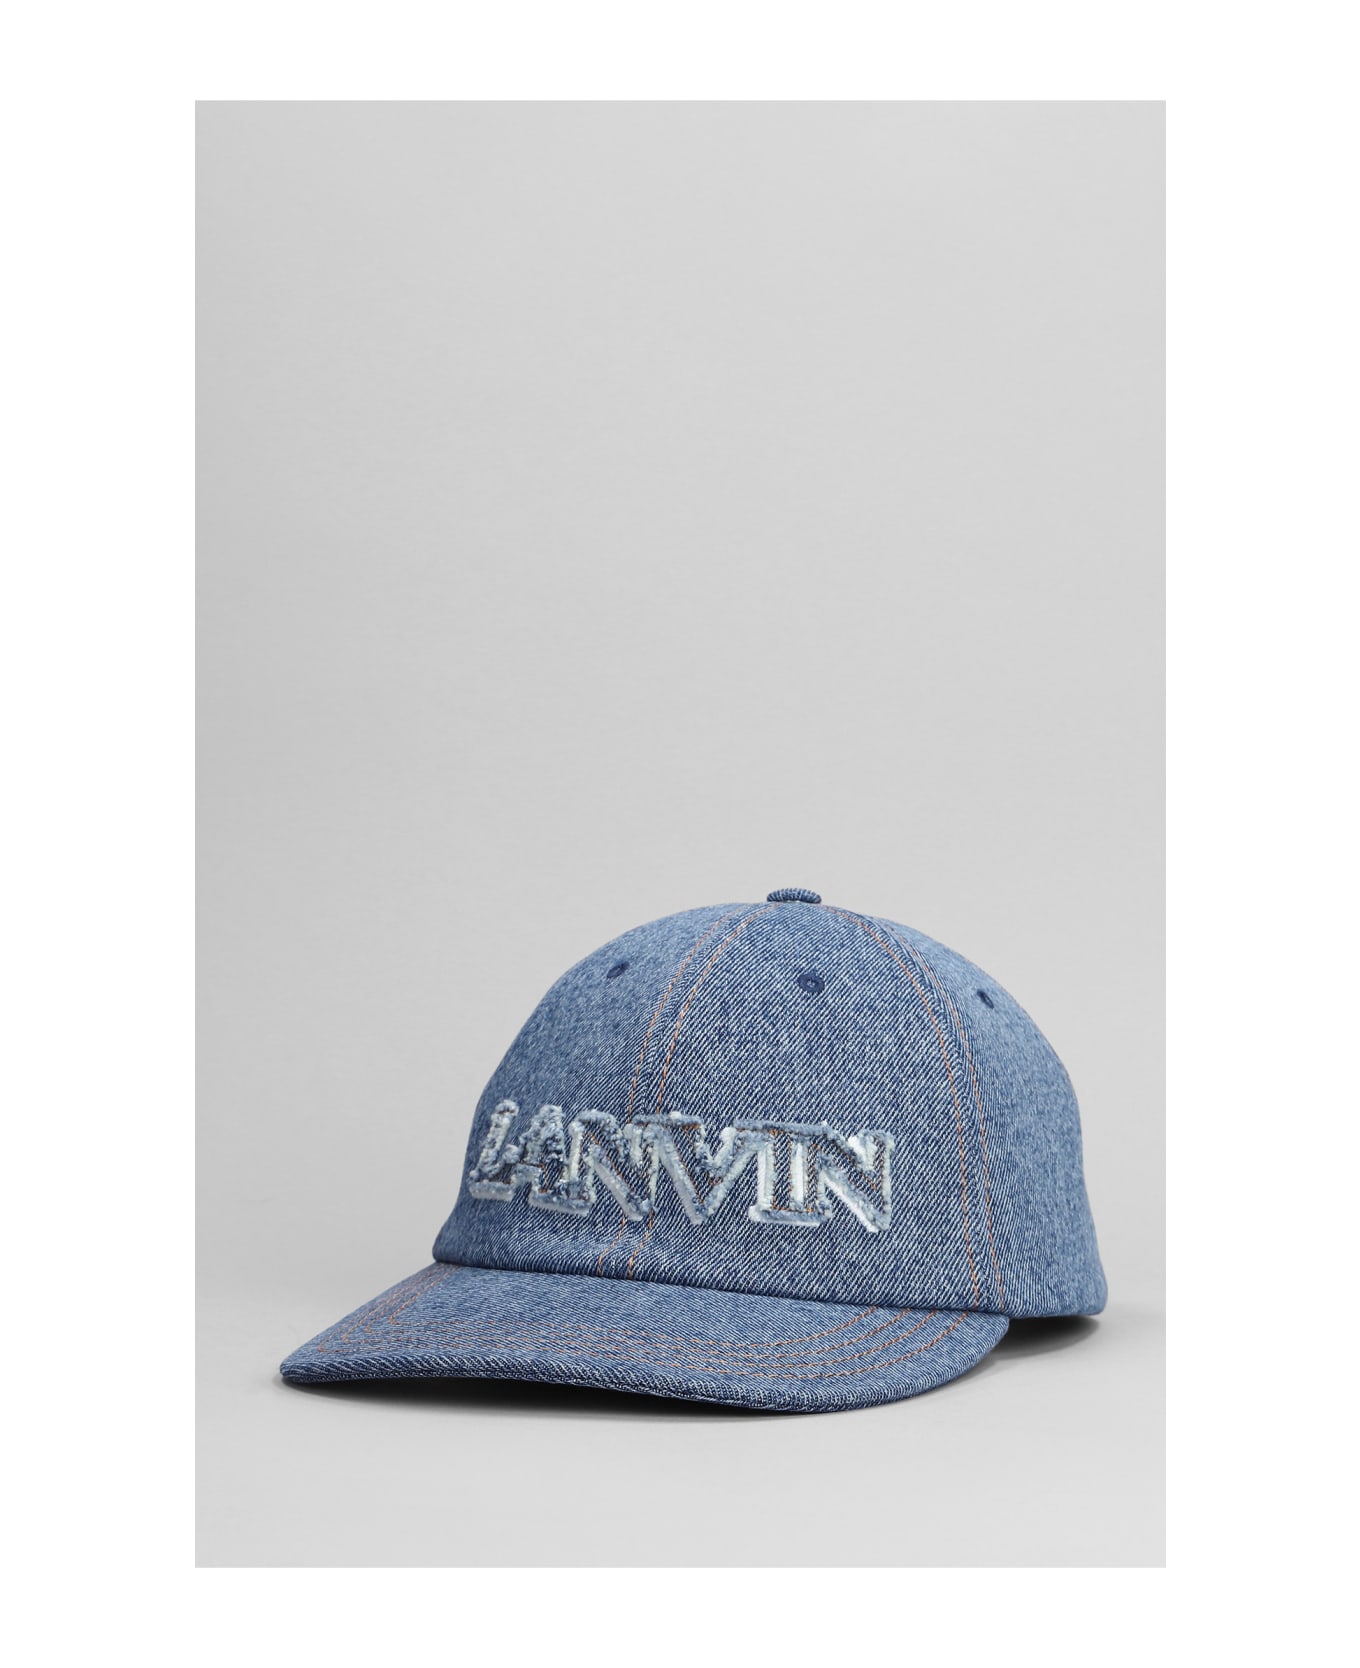 Lanvin Hats In Blue Cotton - blue